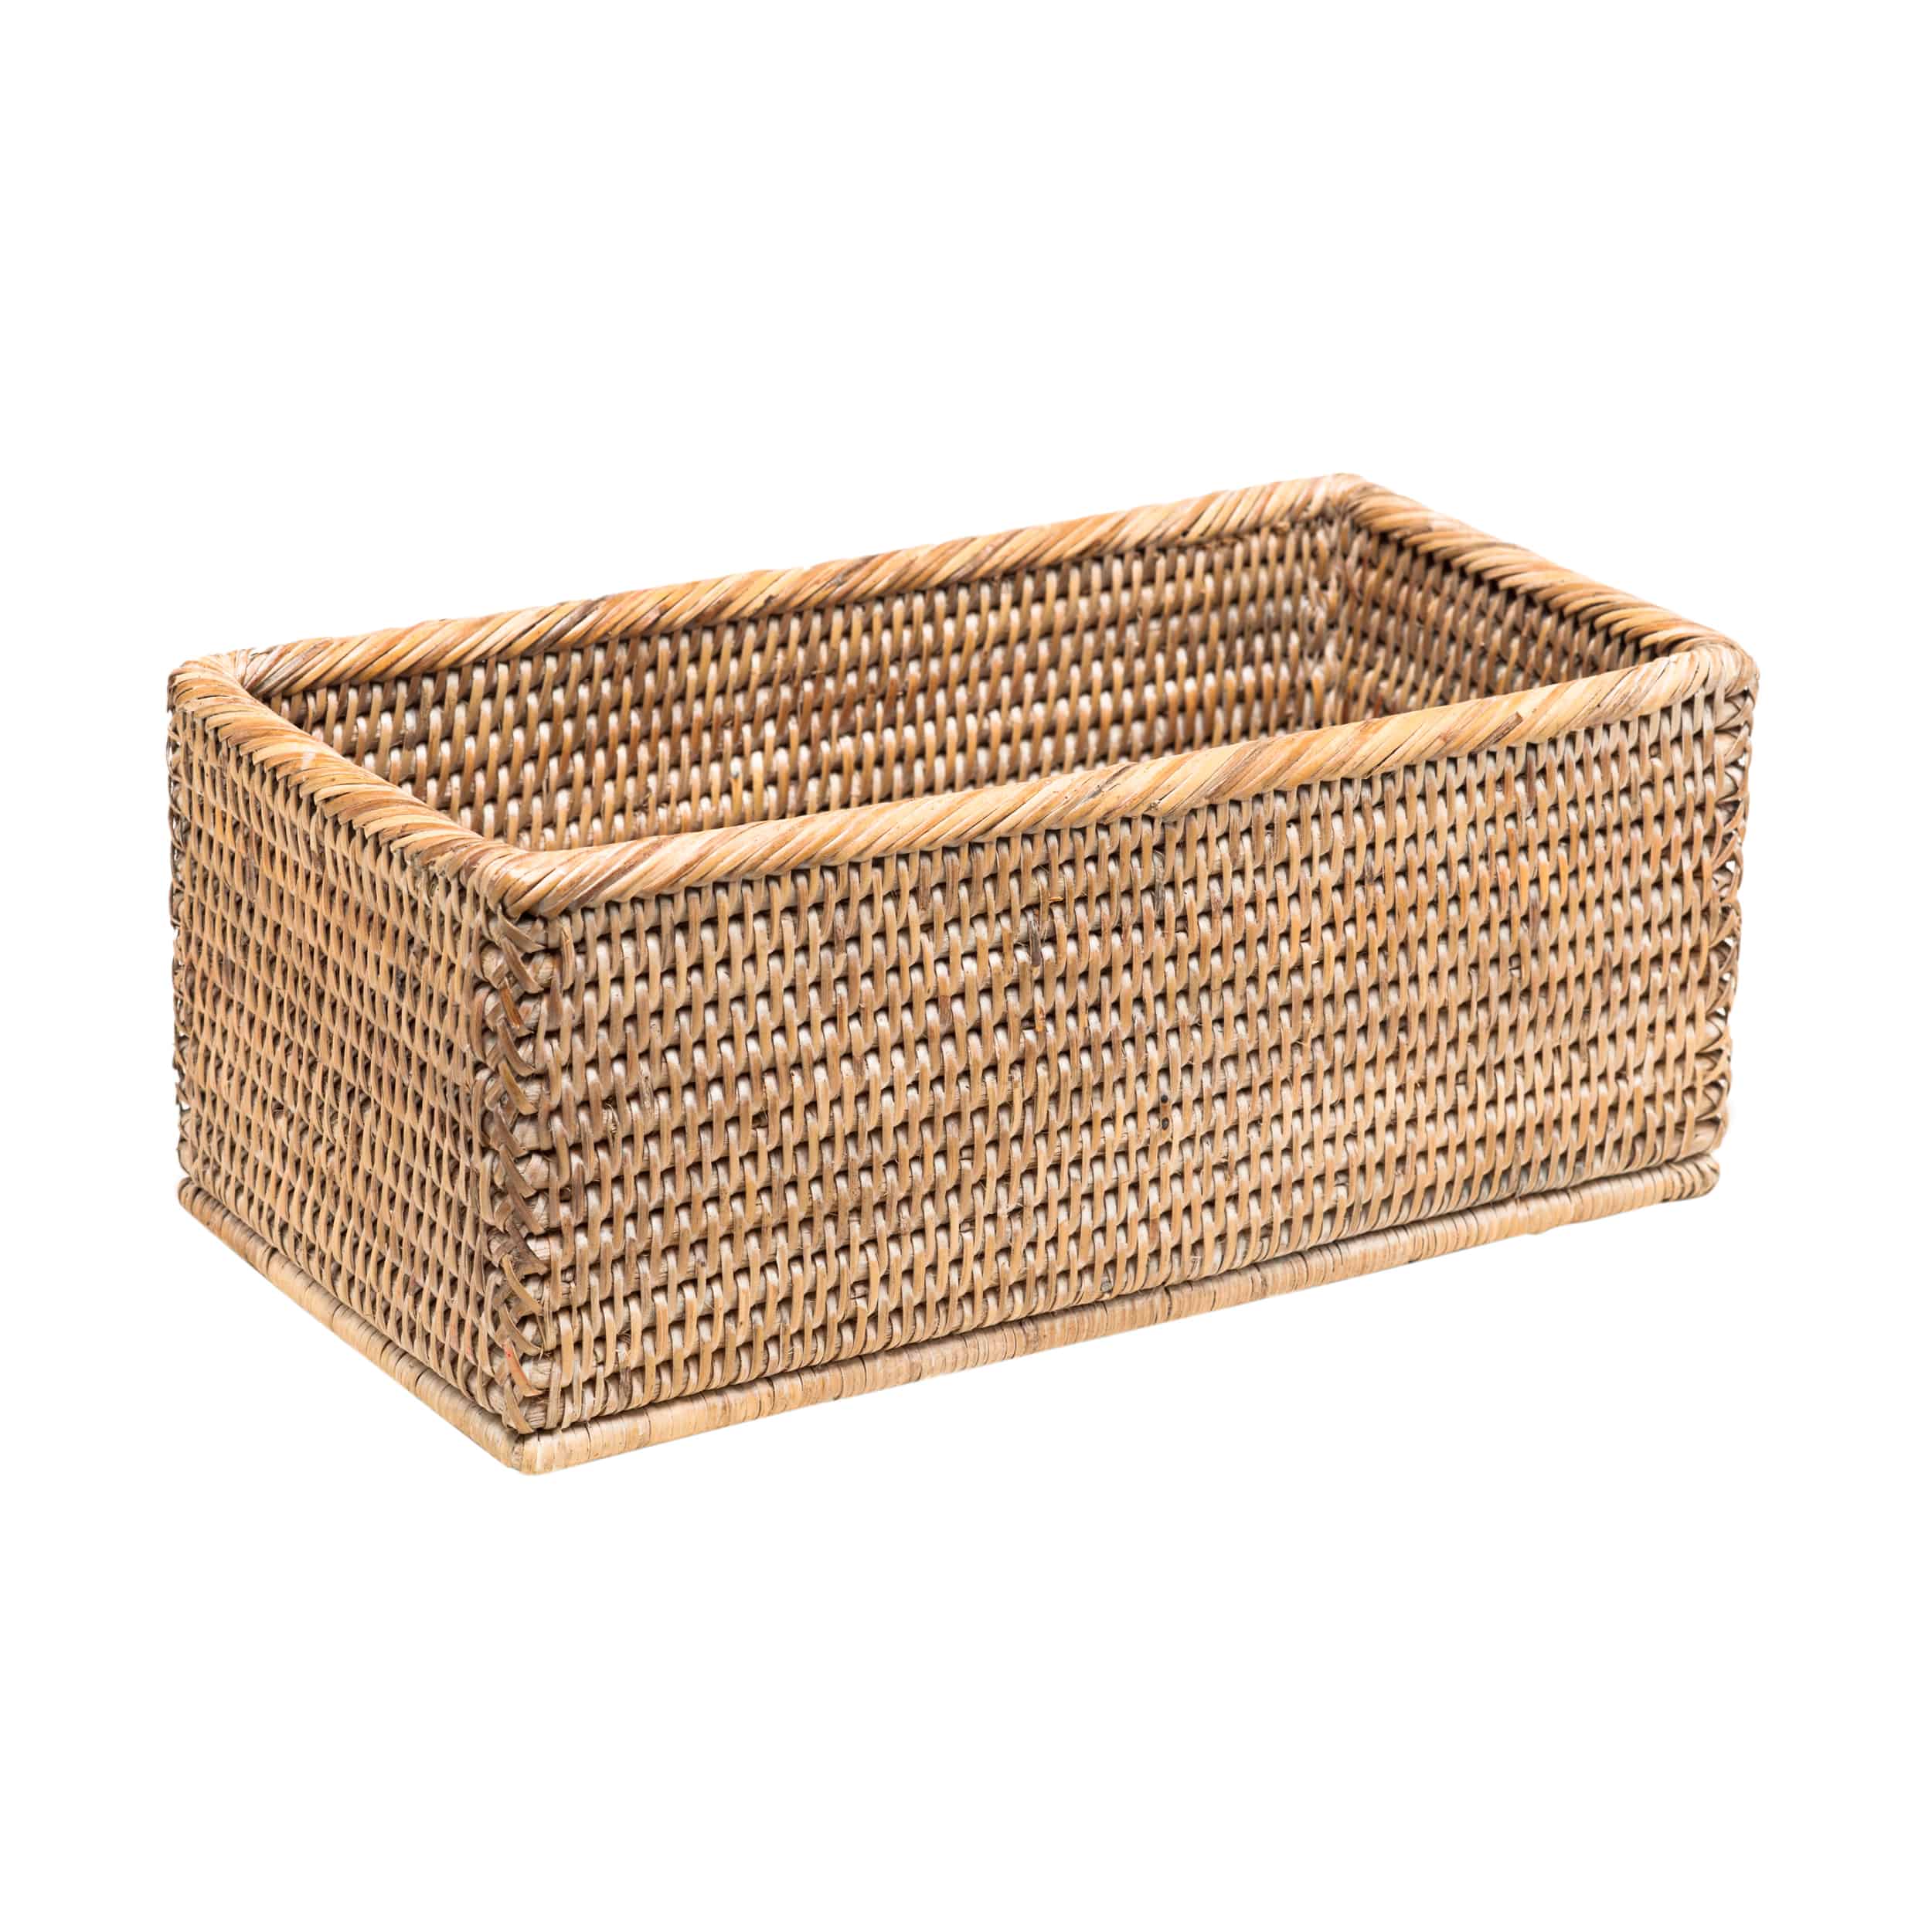 Basket Box